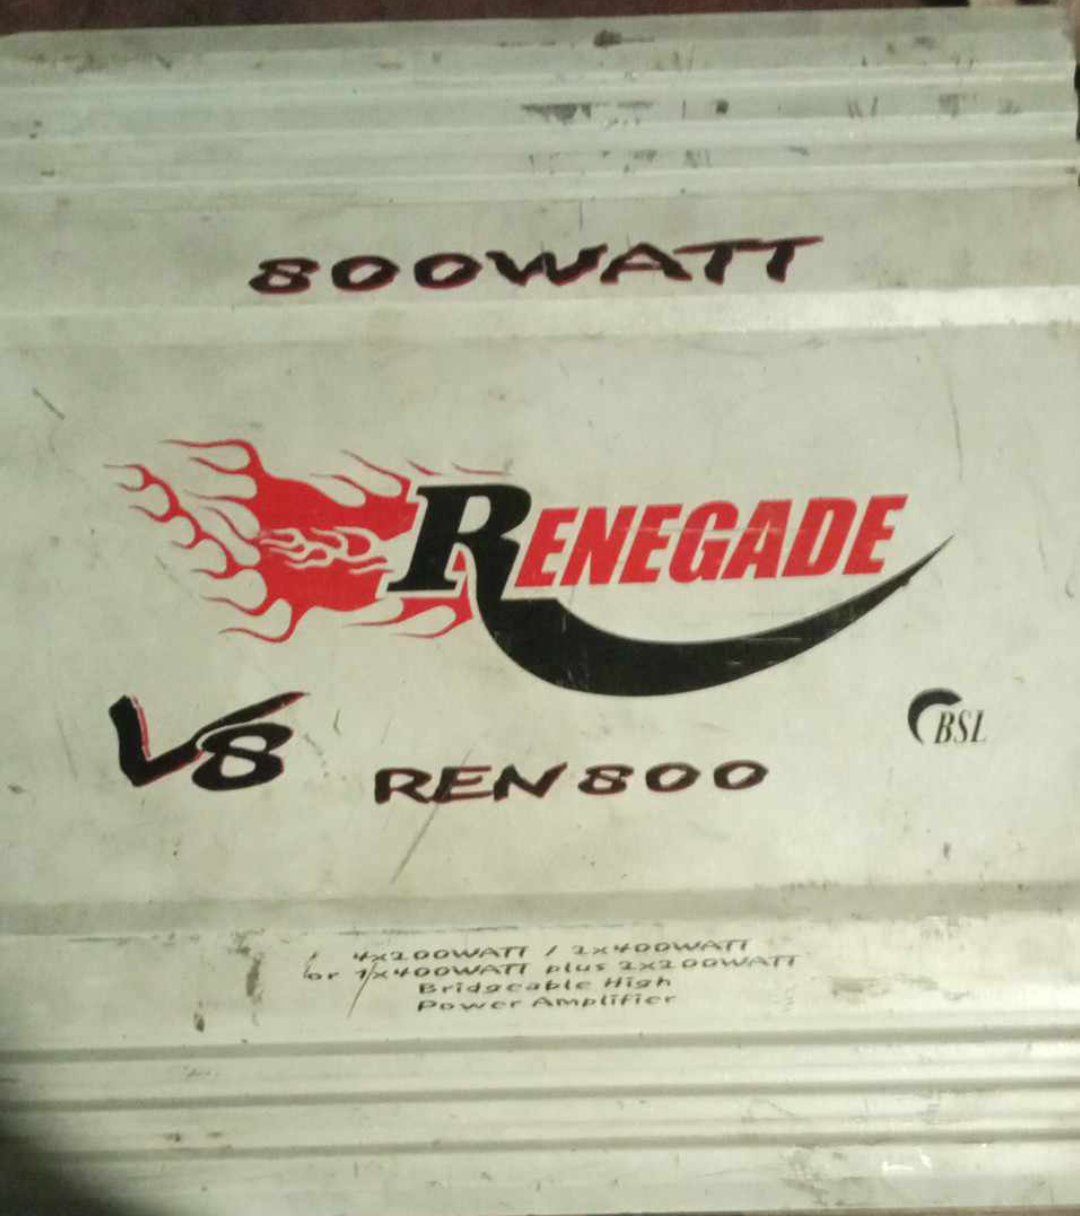 Vând Swboofer AXTON și statie RENEGADE V8 REN800